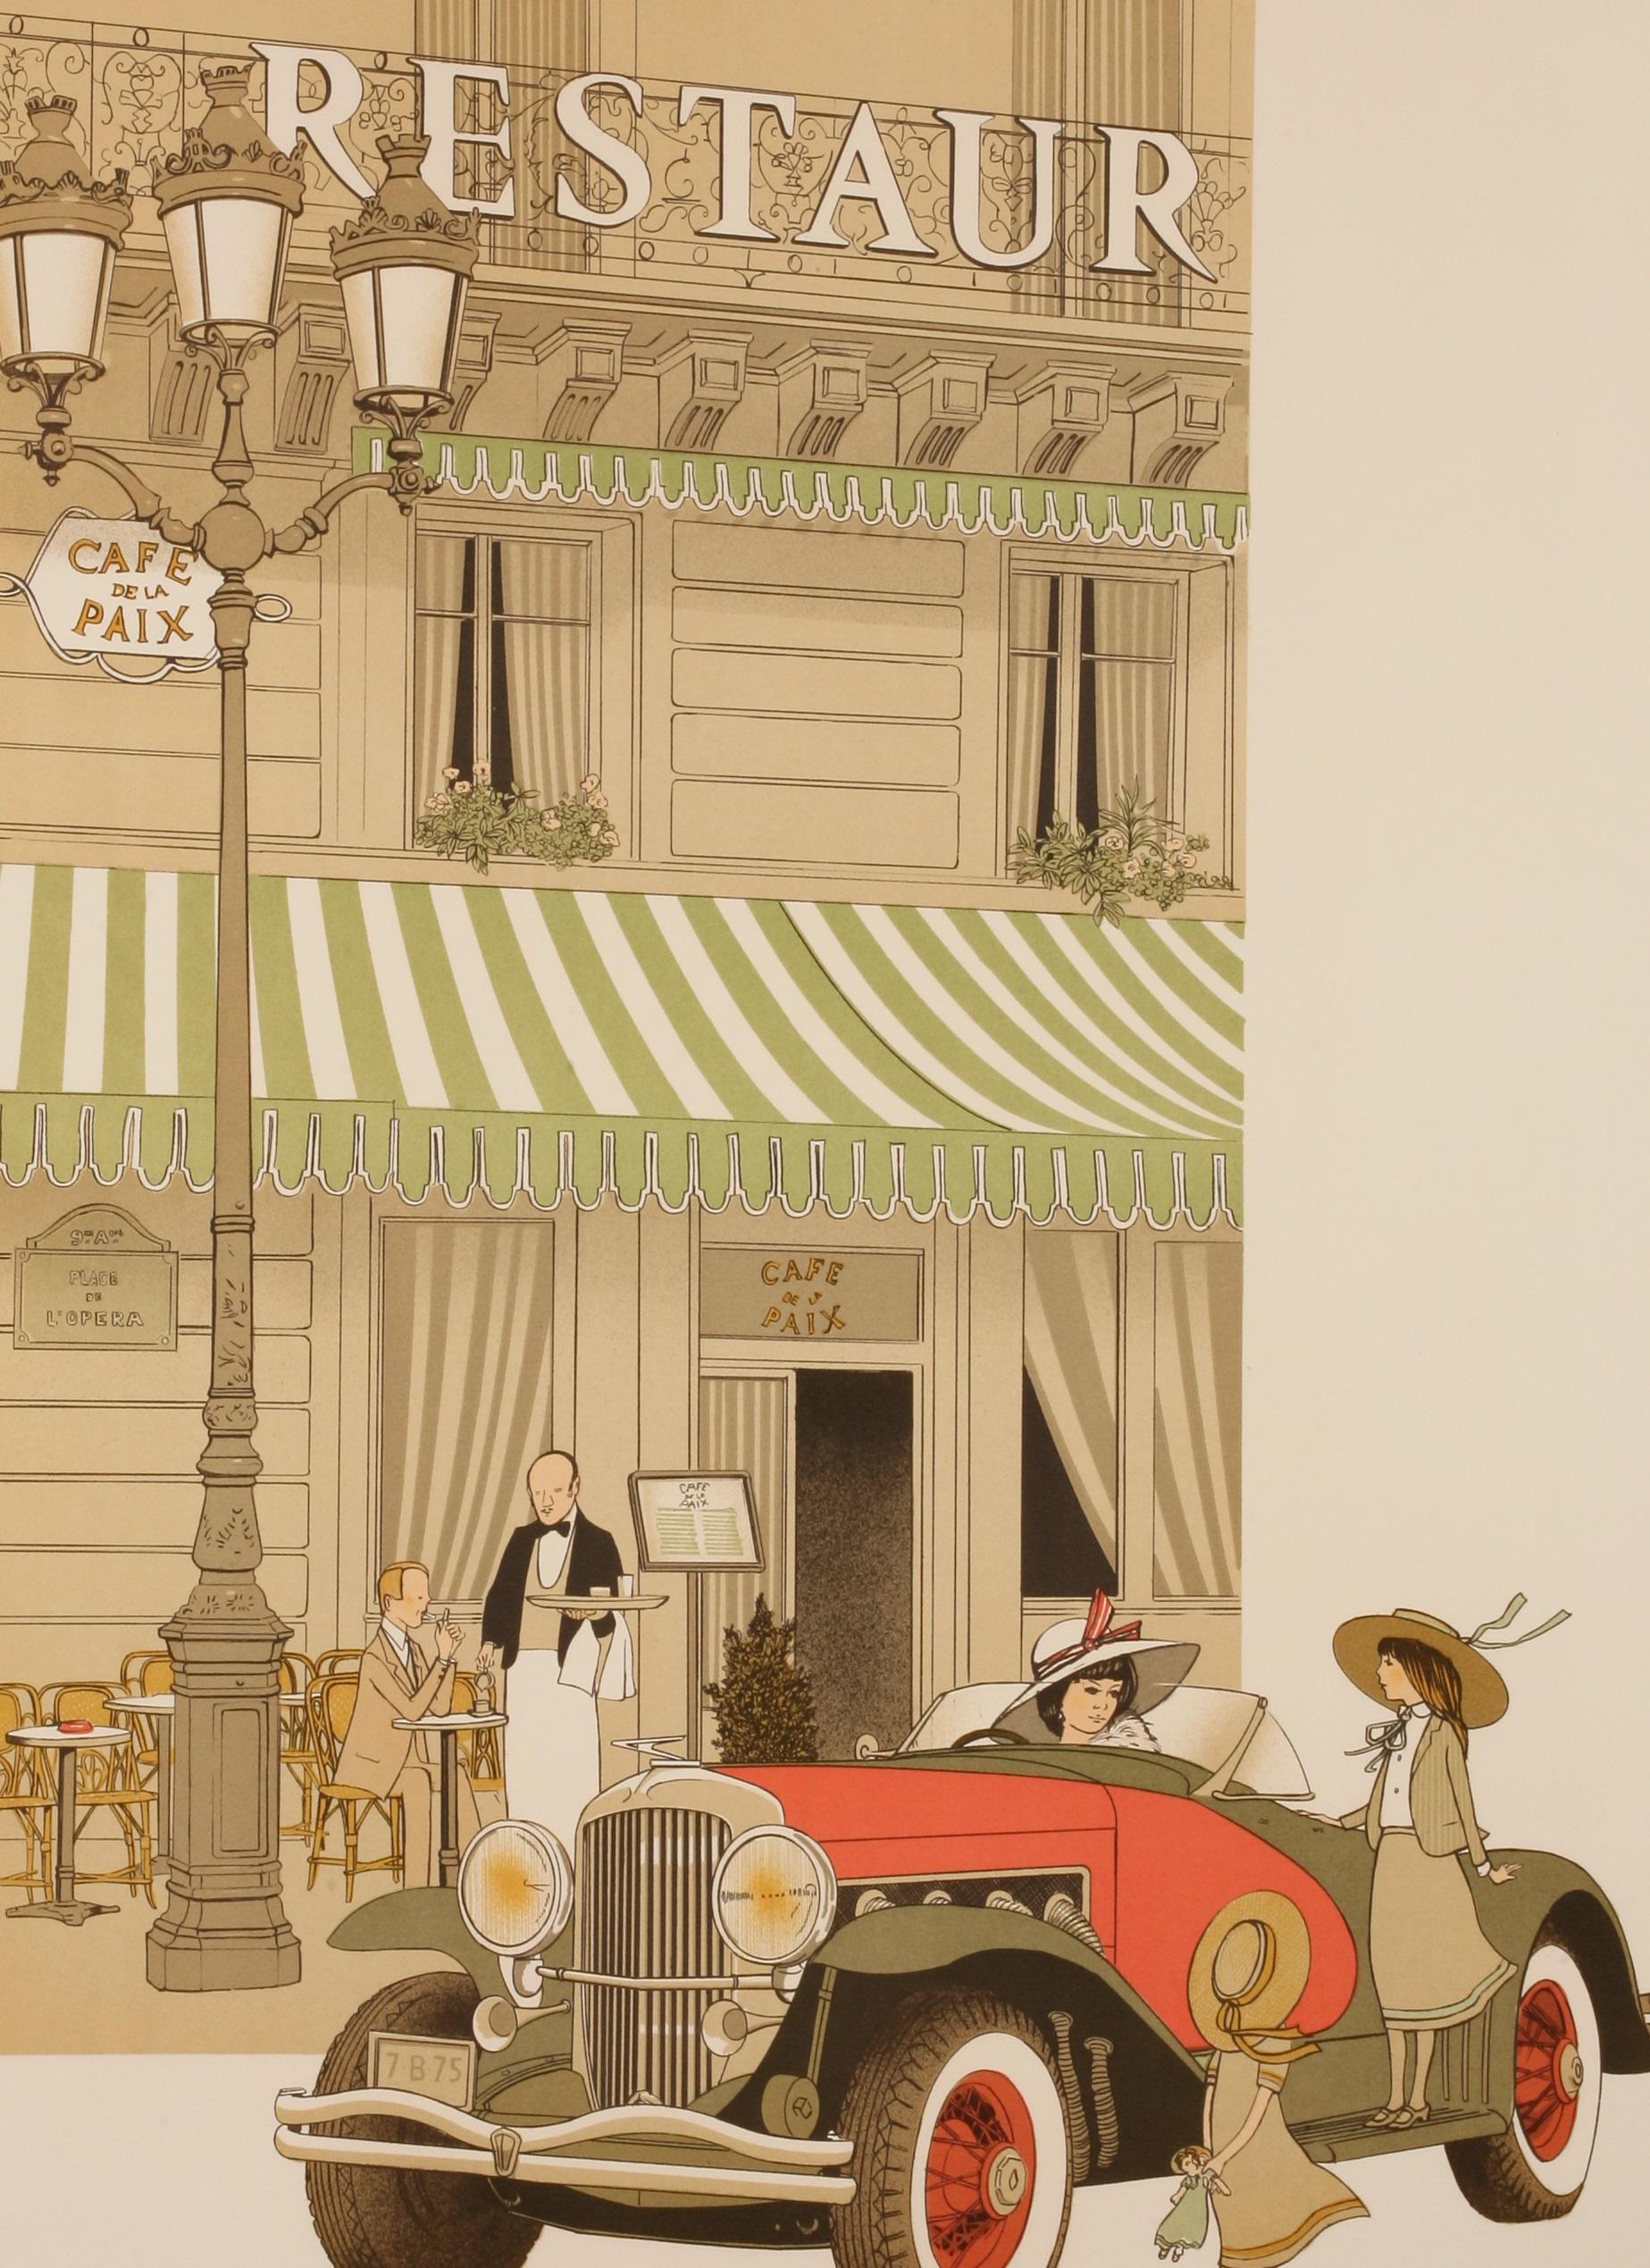 Original Vintage Poster-Walnut Denis-Paul-Cafe De La Paix - Paris, c.1979

Additional Details:
Materials and Techniques: Colour lithograph on paper
Features: Signed
État : Occasion 
Subject: Travel
Original/Licensed Reprint: Original
Style: